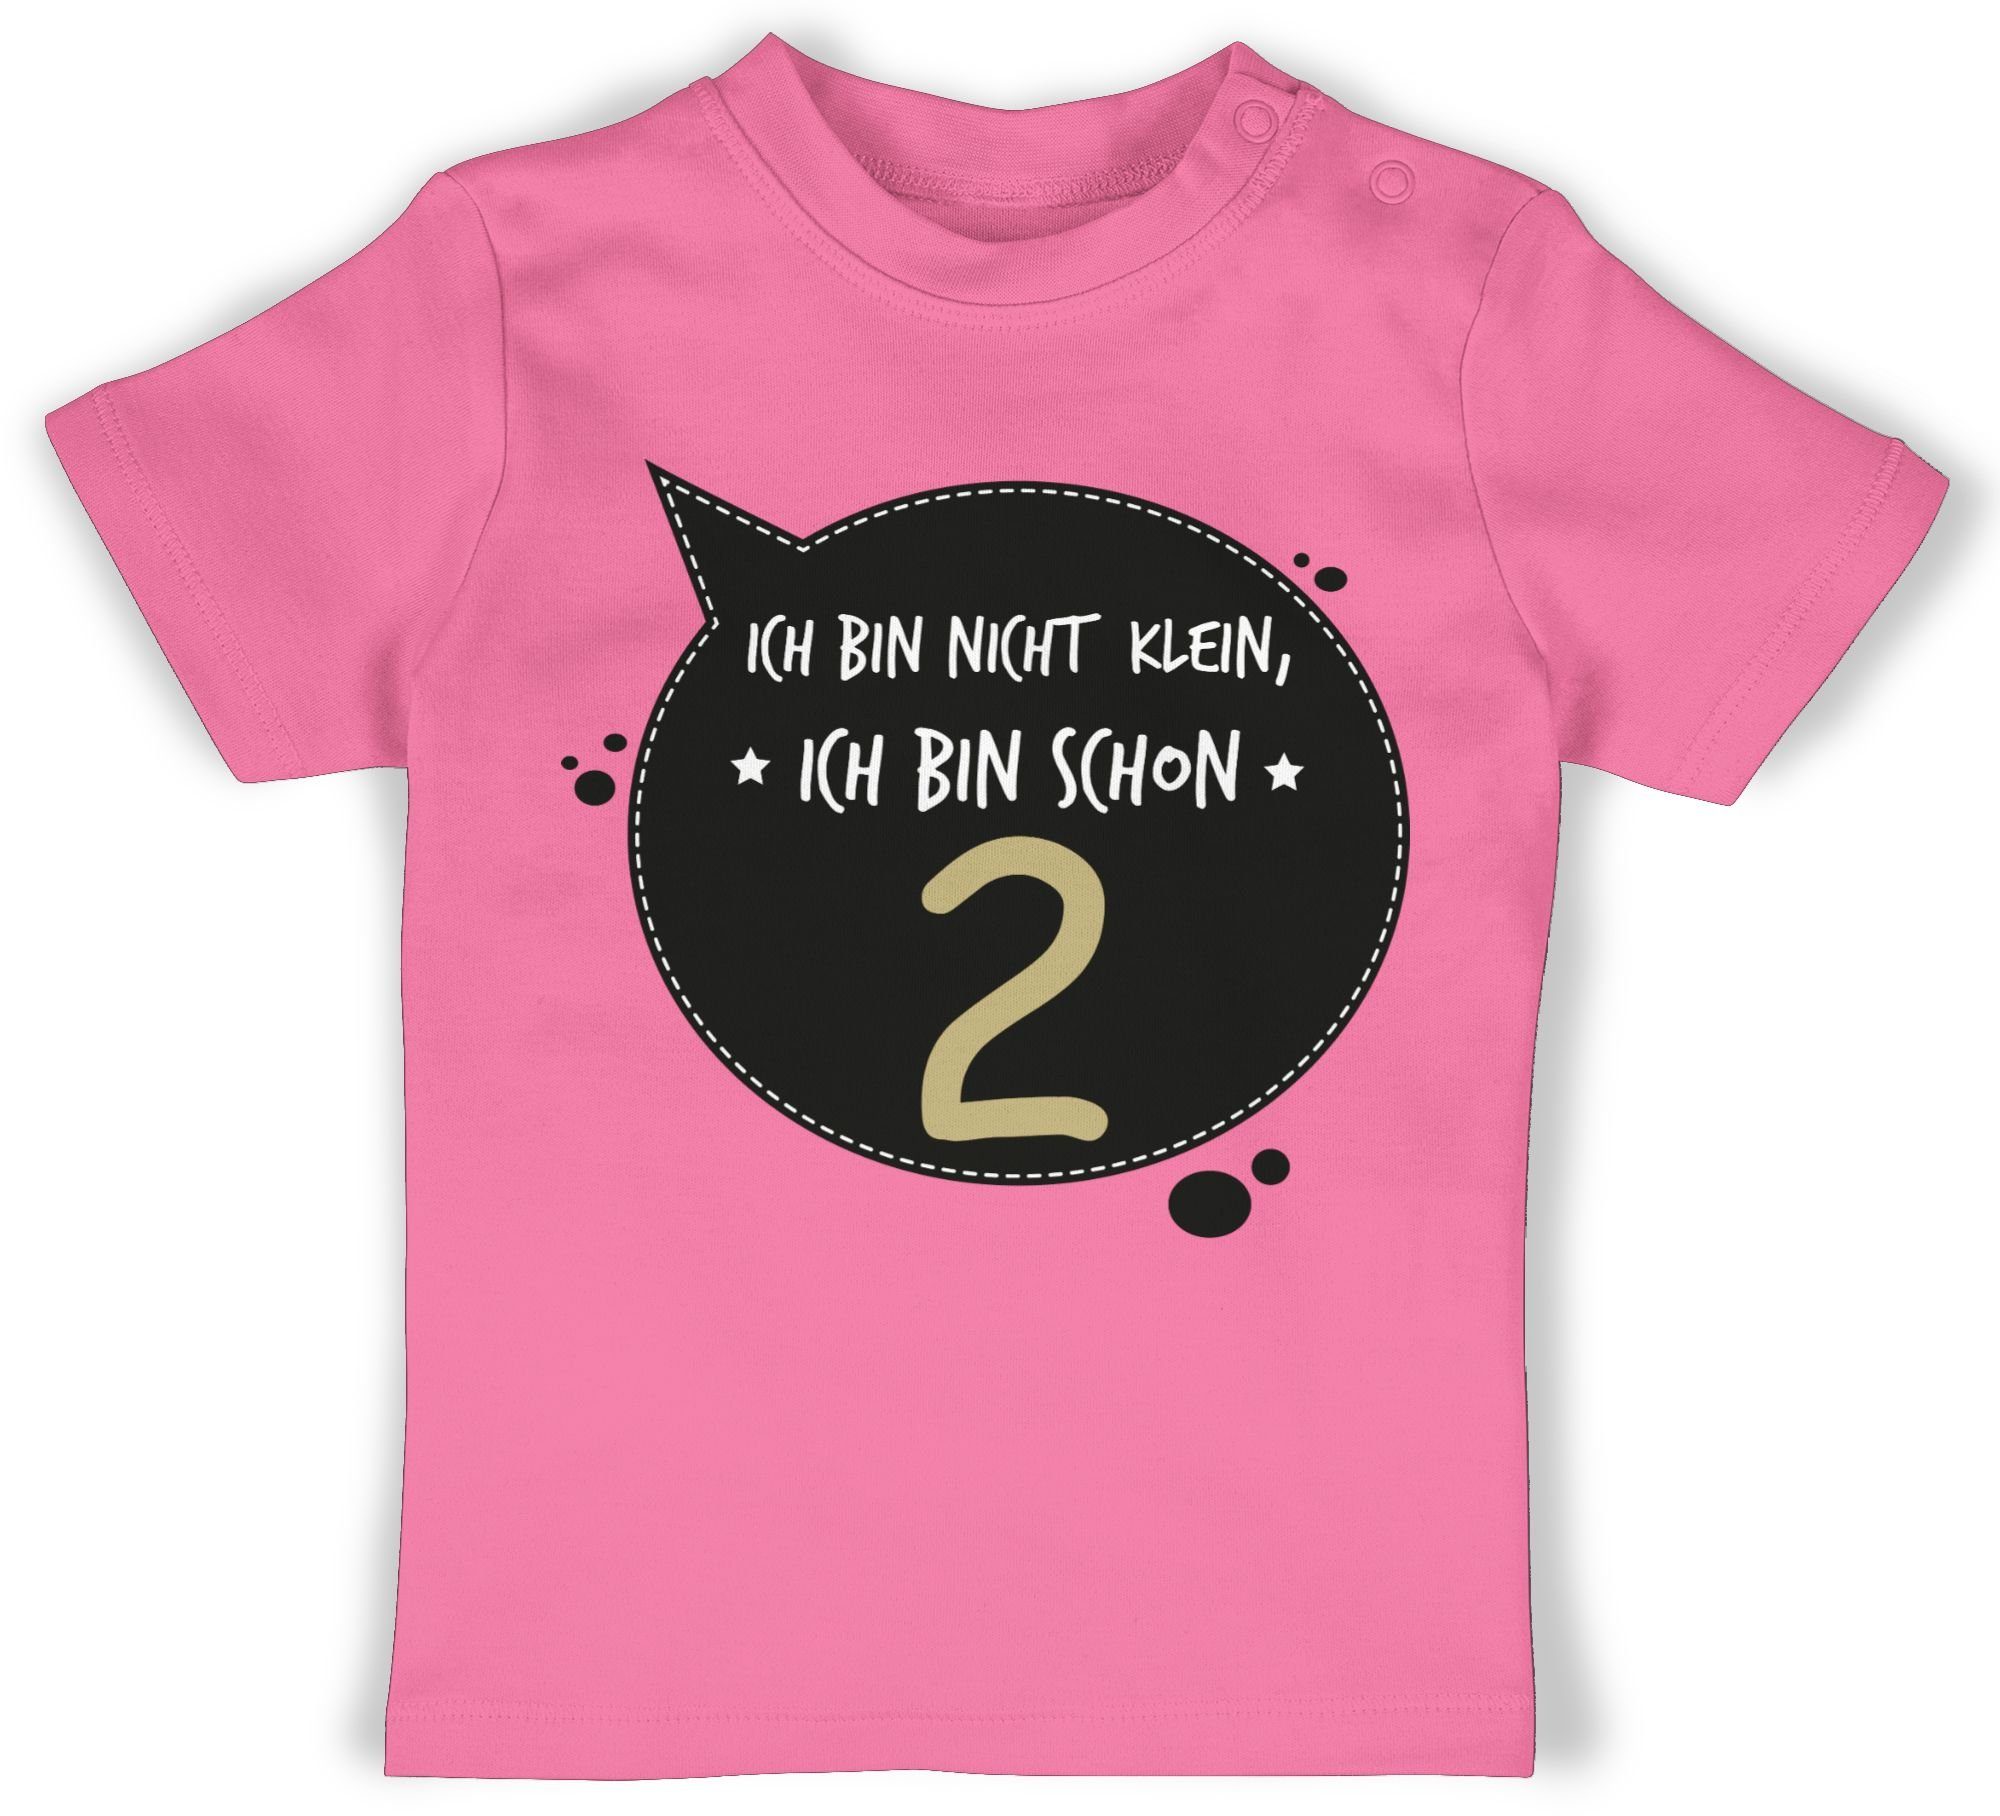 Ich 3 schon nicht ich Geburtstag Shirtracer klein, T-Shirt Pink zwei bin 2. bin